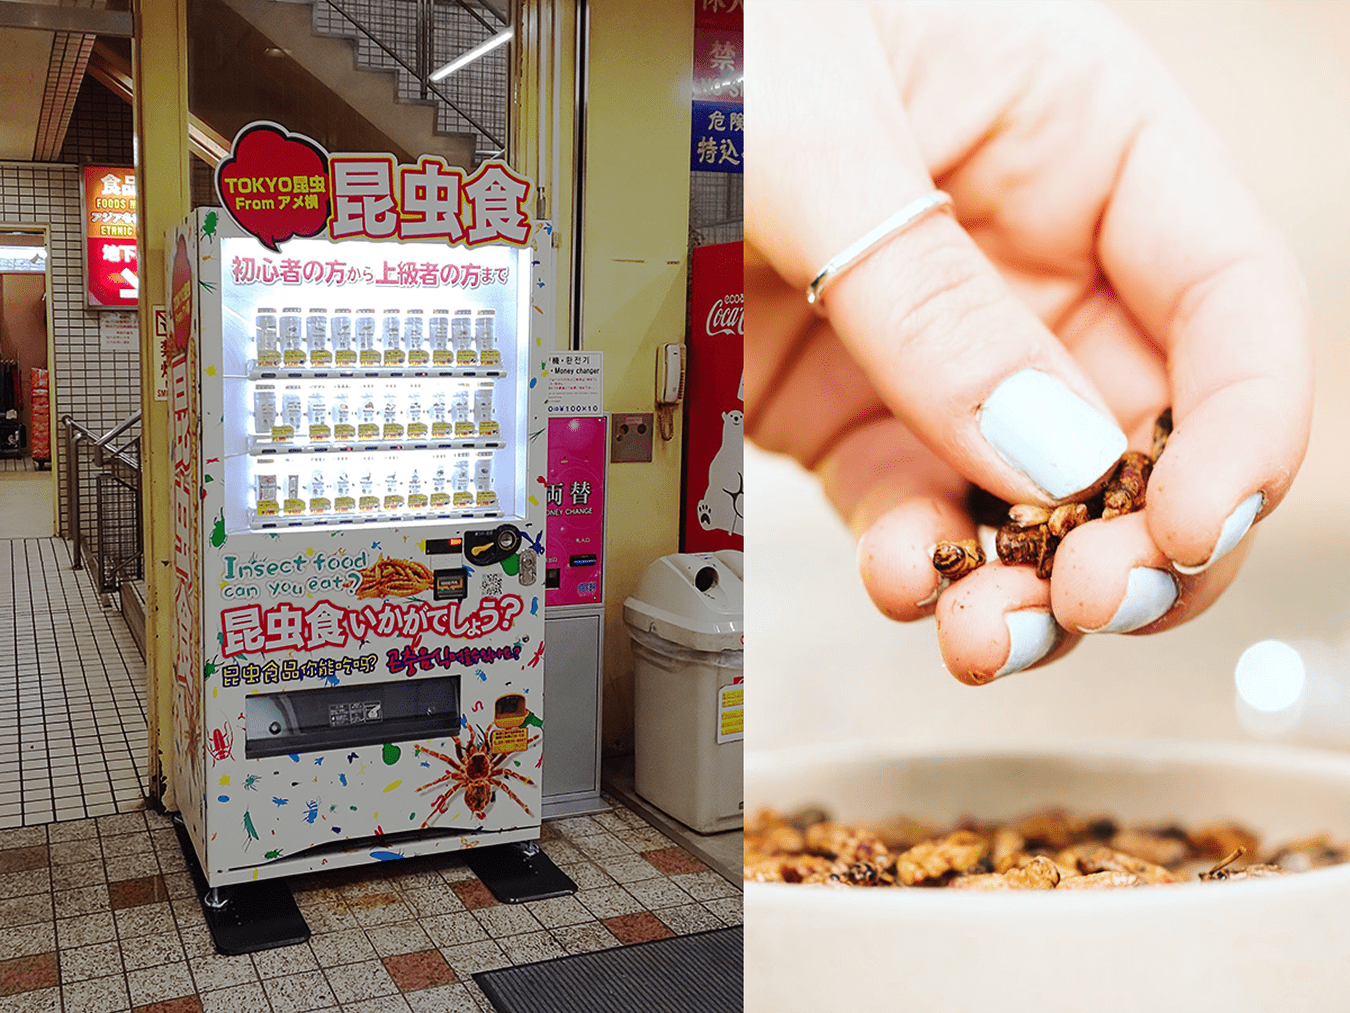 Bizarra máquina automática que vende insetos em Tóquio